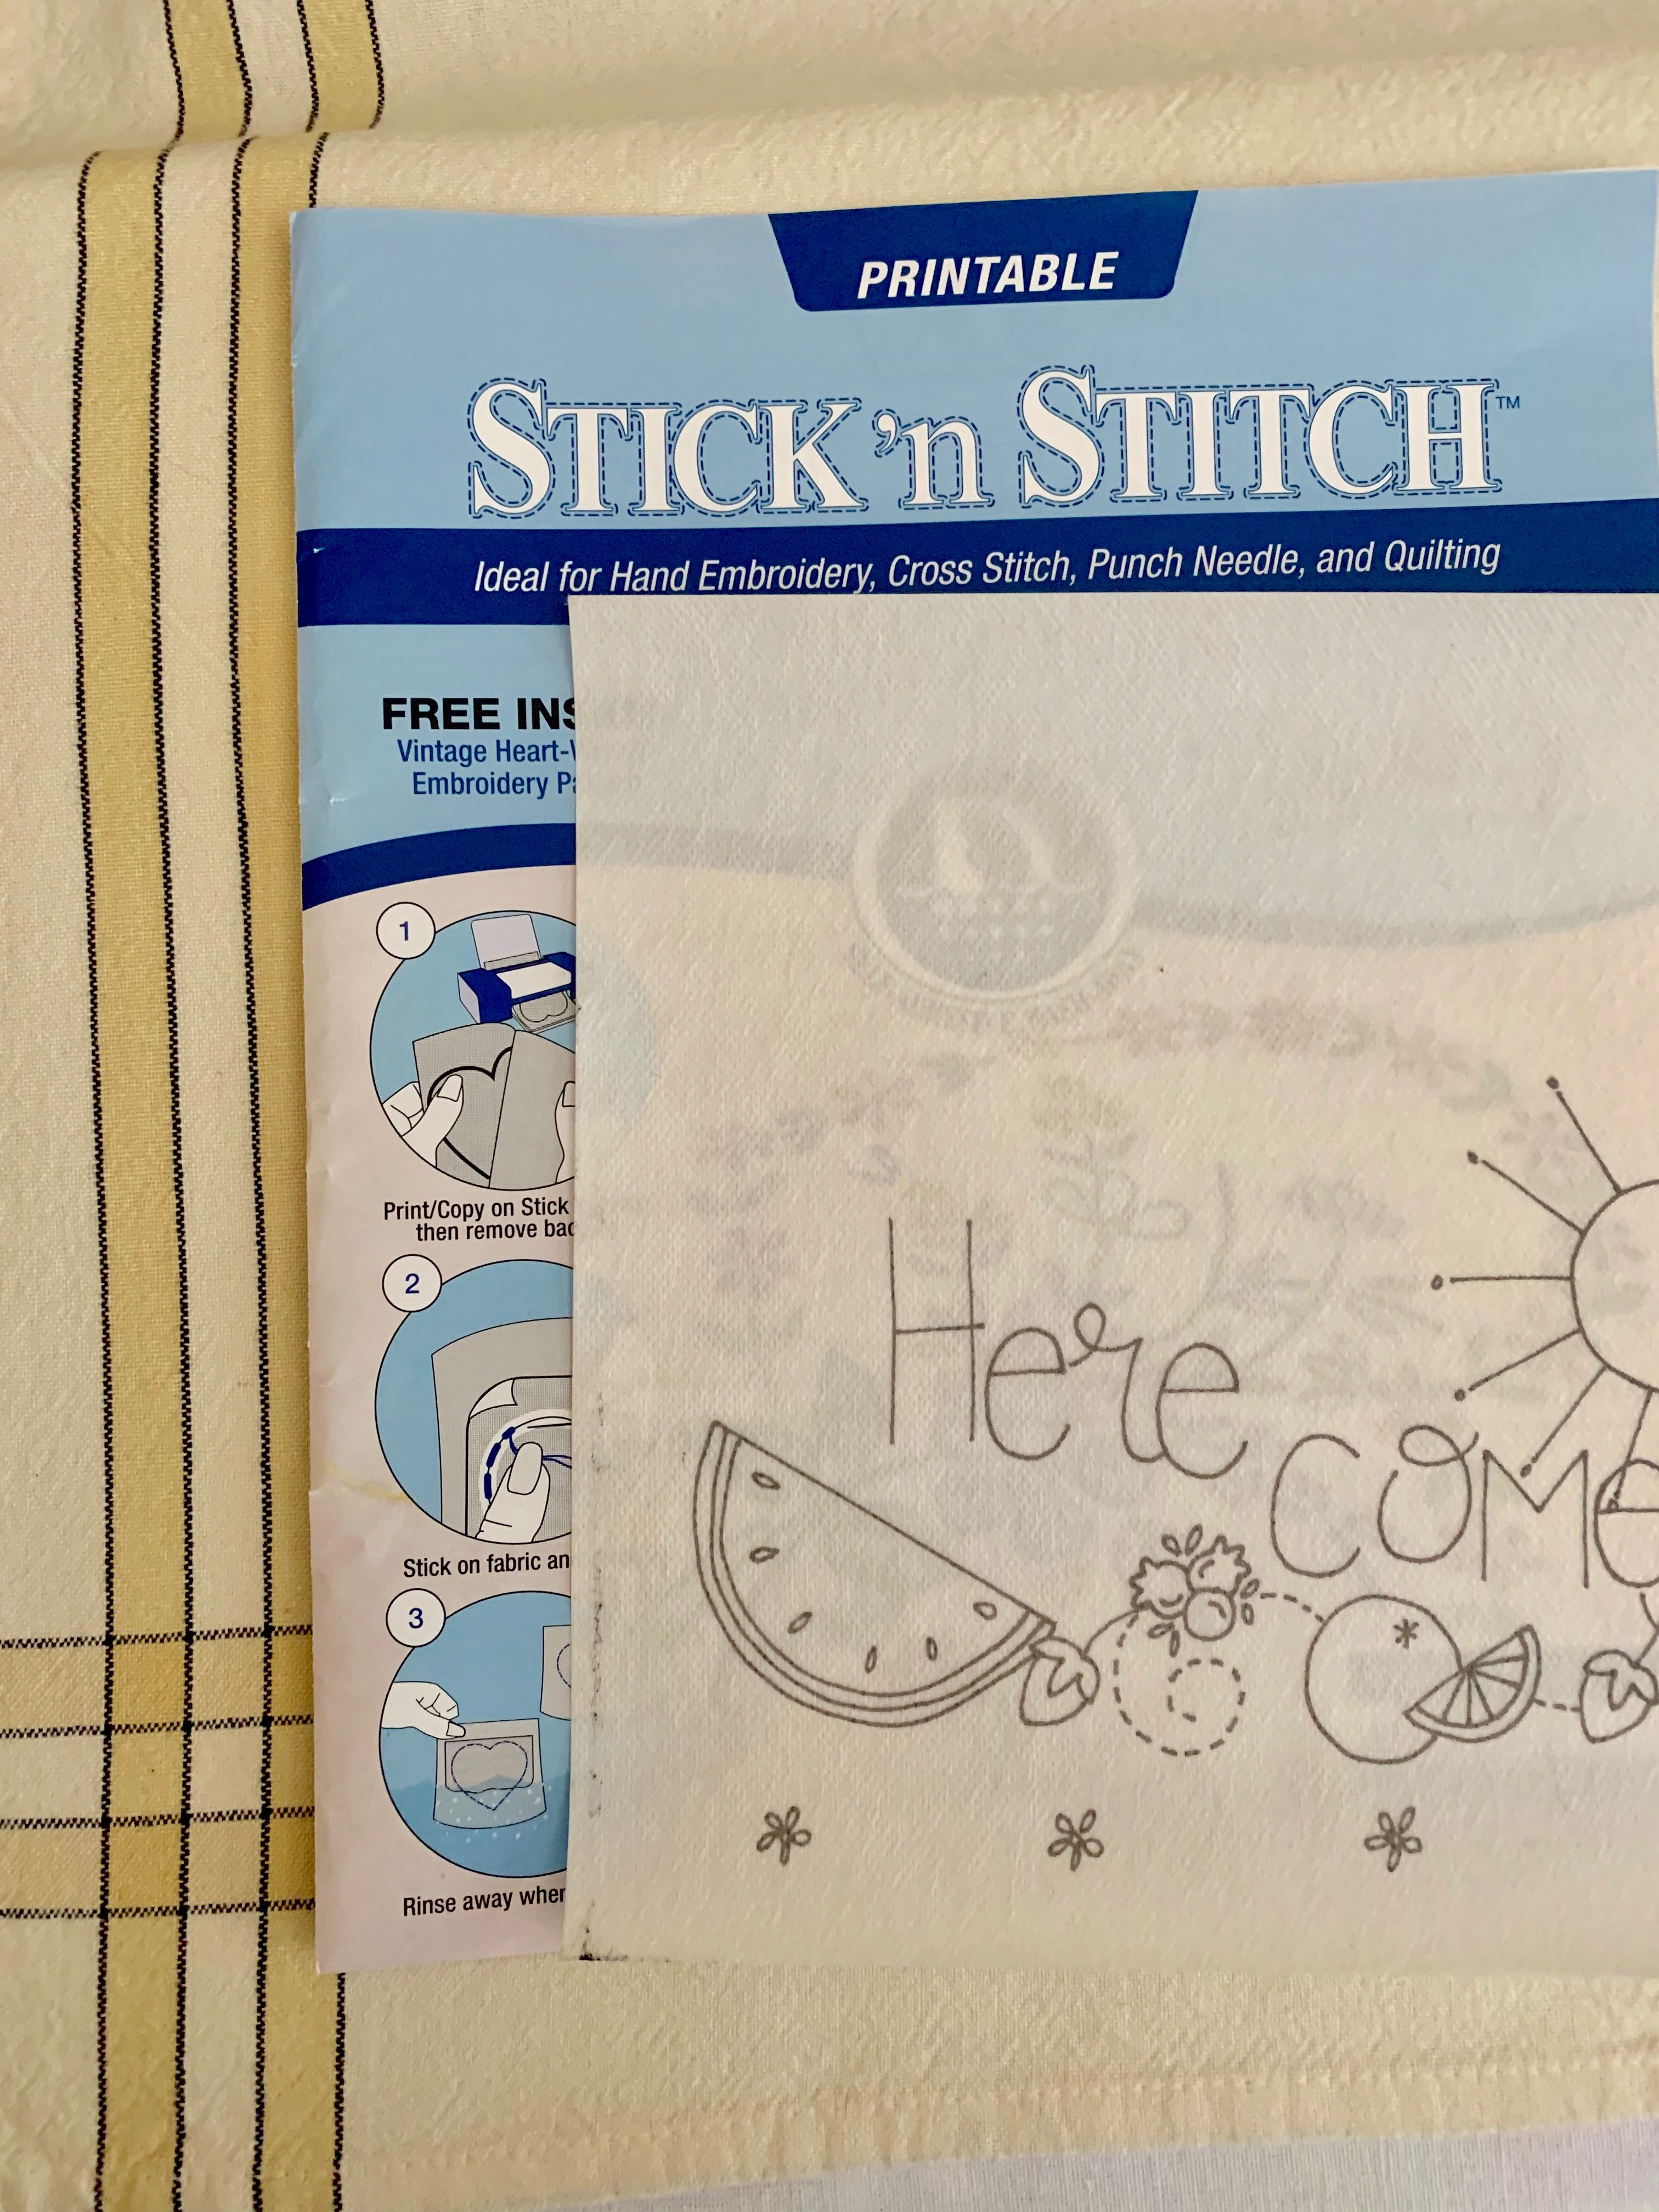 Stick n' Stitch by Sulky